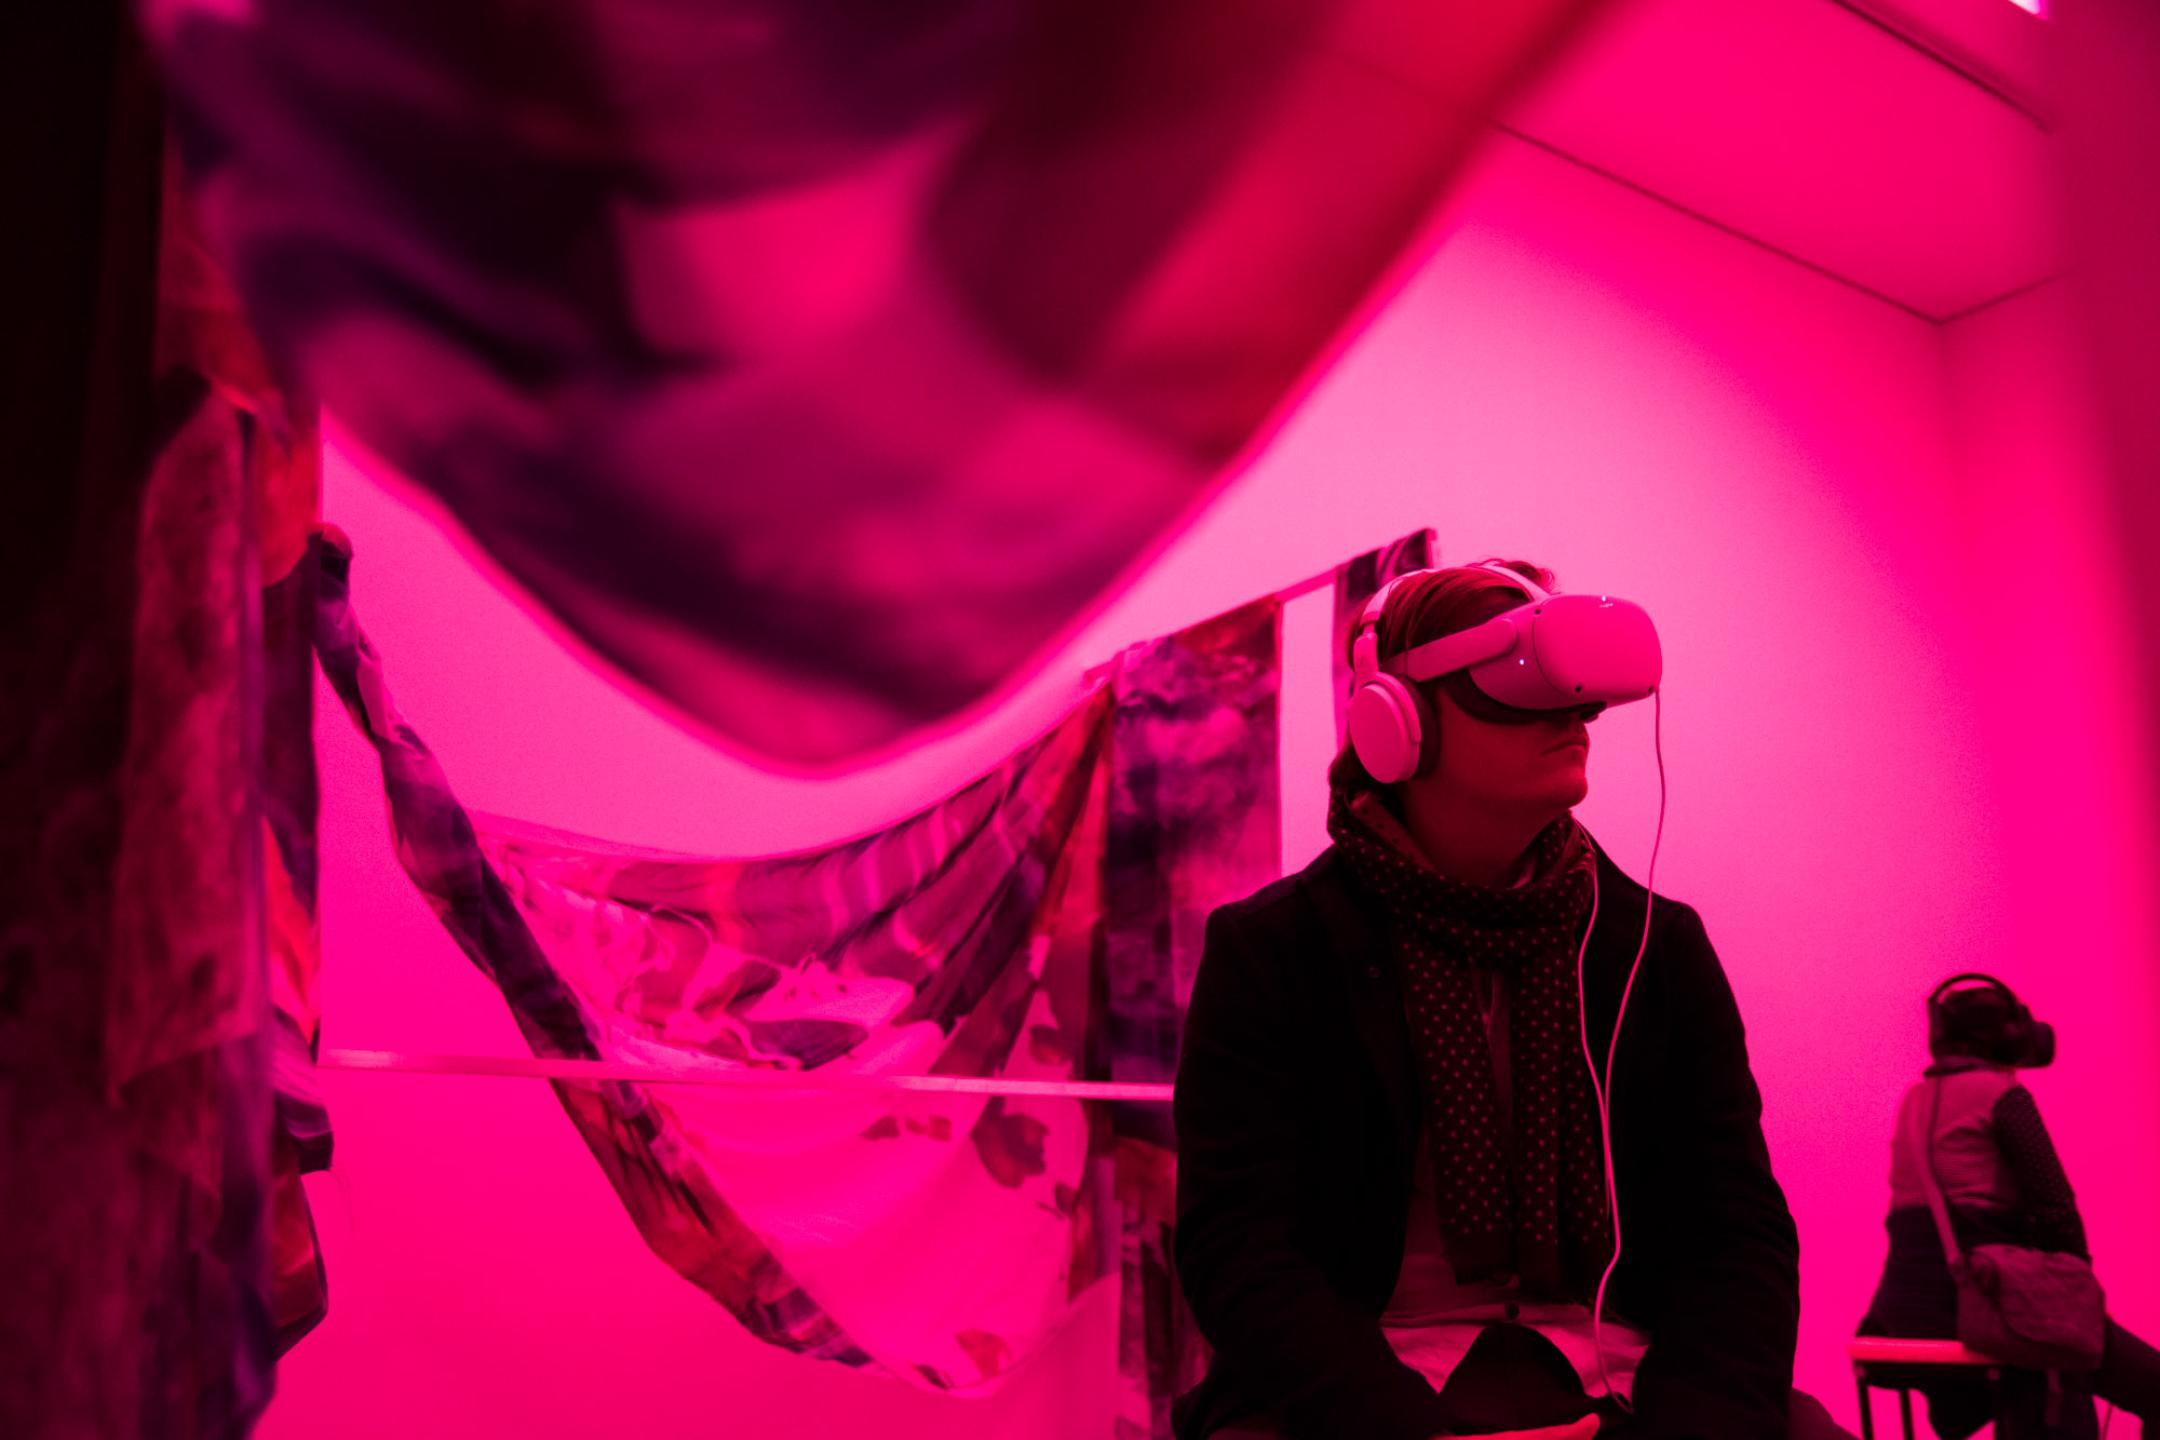 Ein Mann sitzt VR-Brille und Kopfhörern in einem Raum, der in pinkes Licht getaucht ist. Um ihn herum sind große Tücher mit schwarz-weißem Muster gespannt.